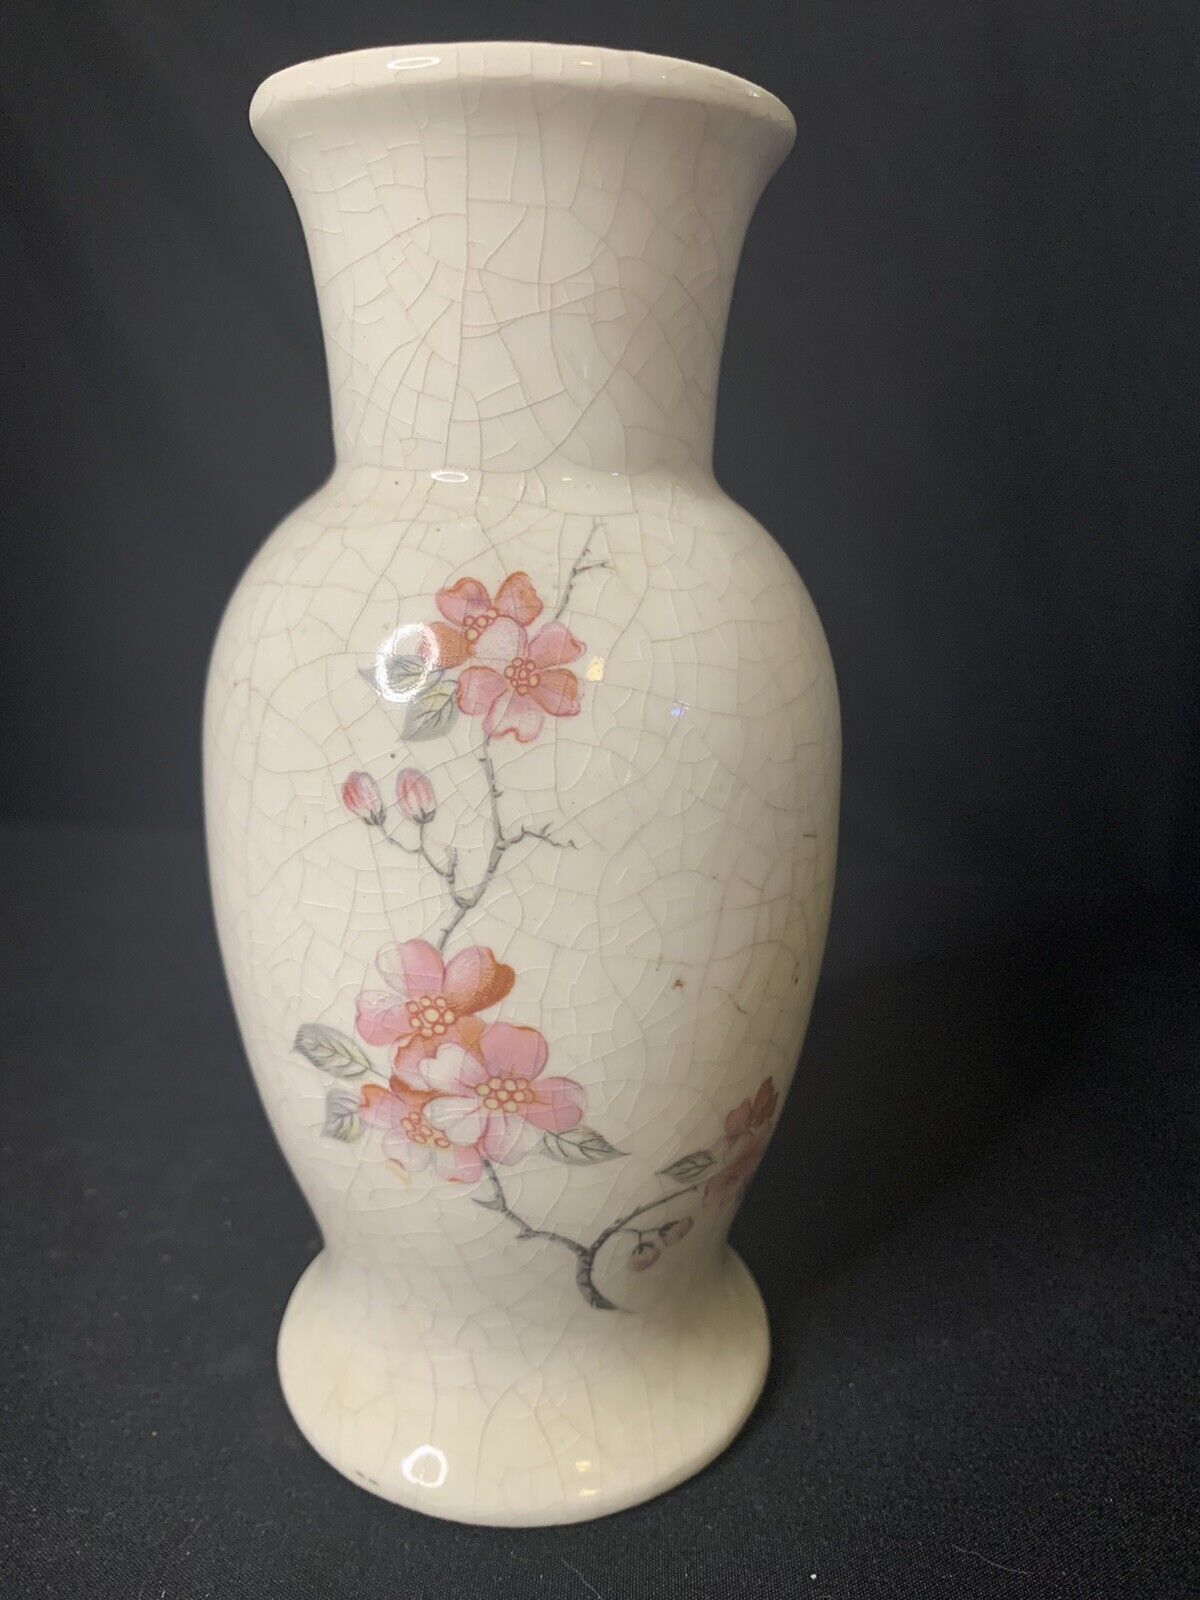 VTG 1980’s Japanese Cherry Blossom Vase 6.5” Made In Japan